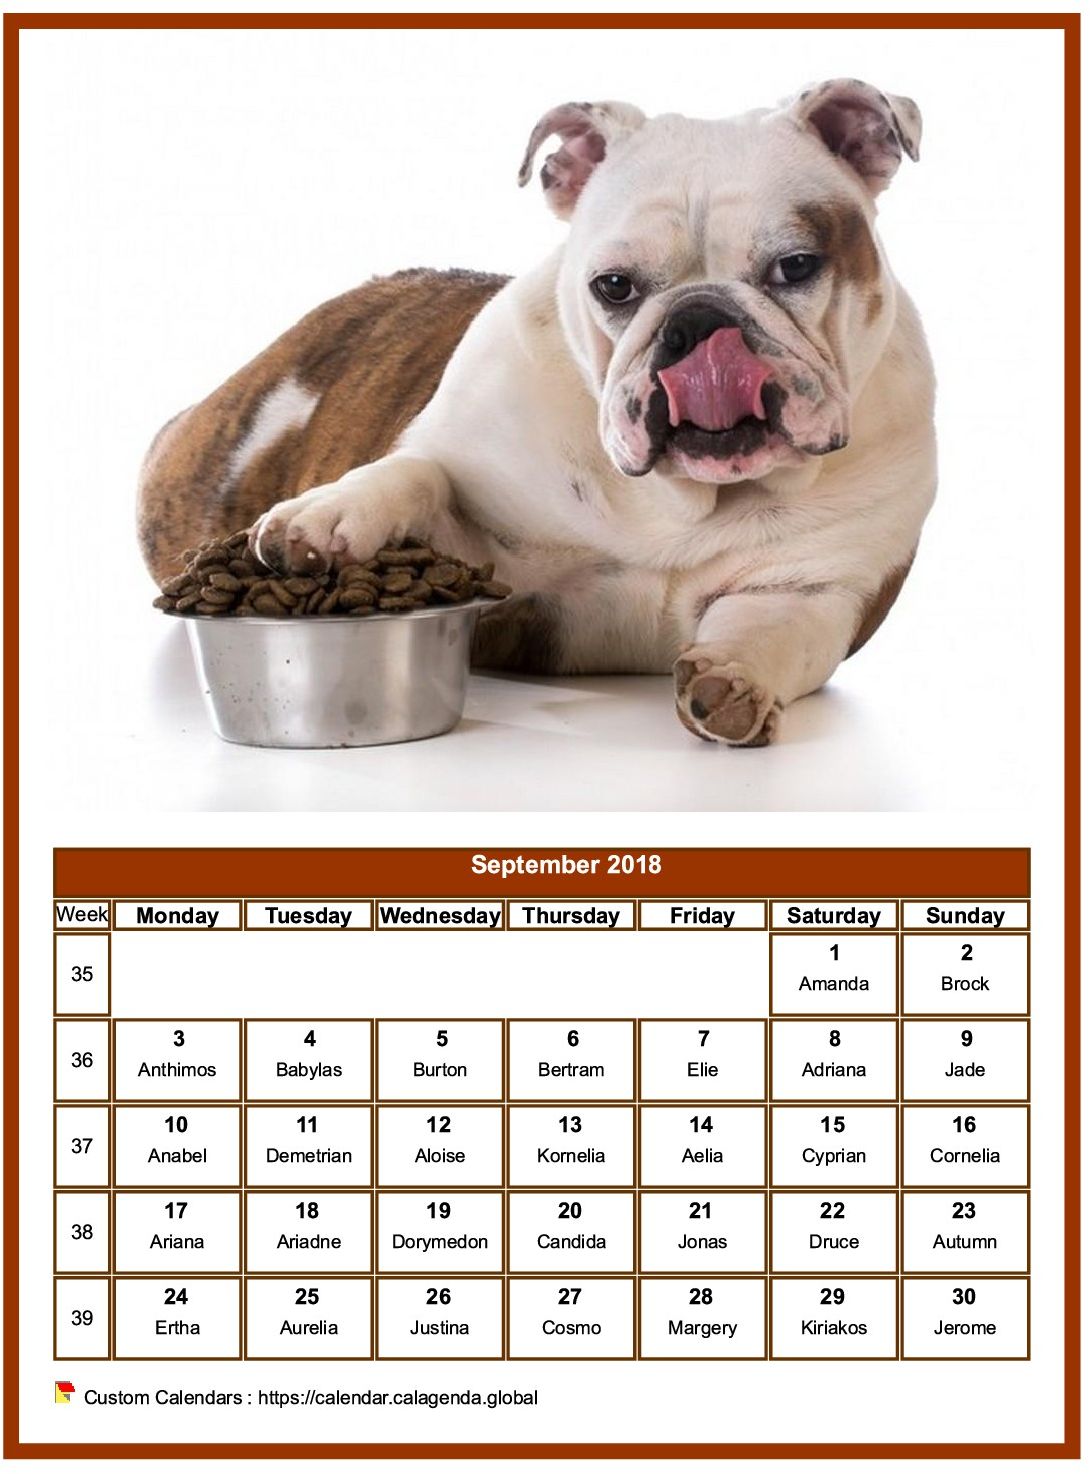 Calendar September 2018 dogs